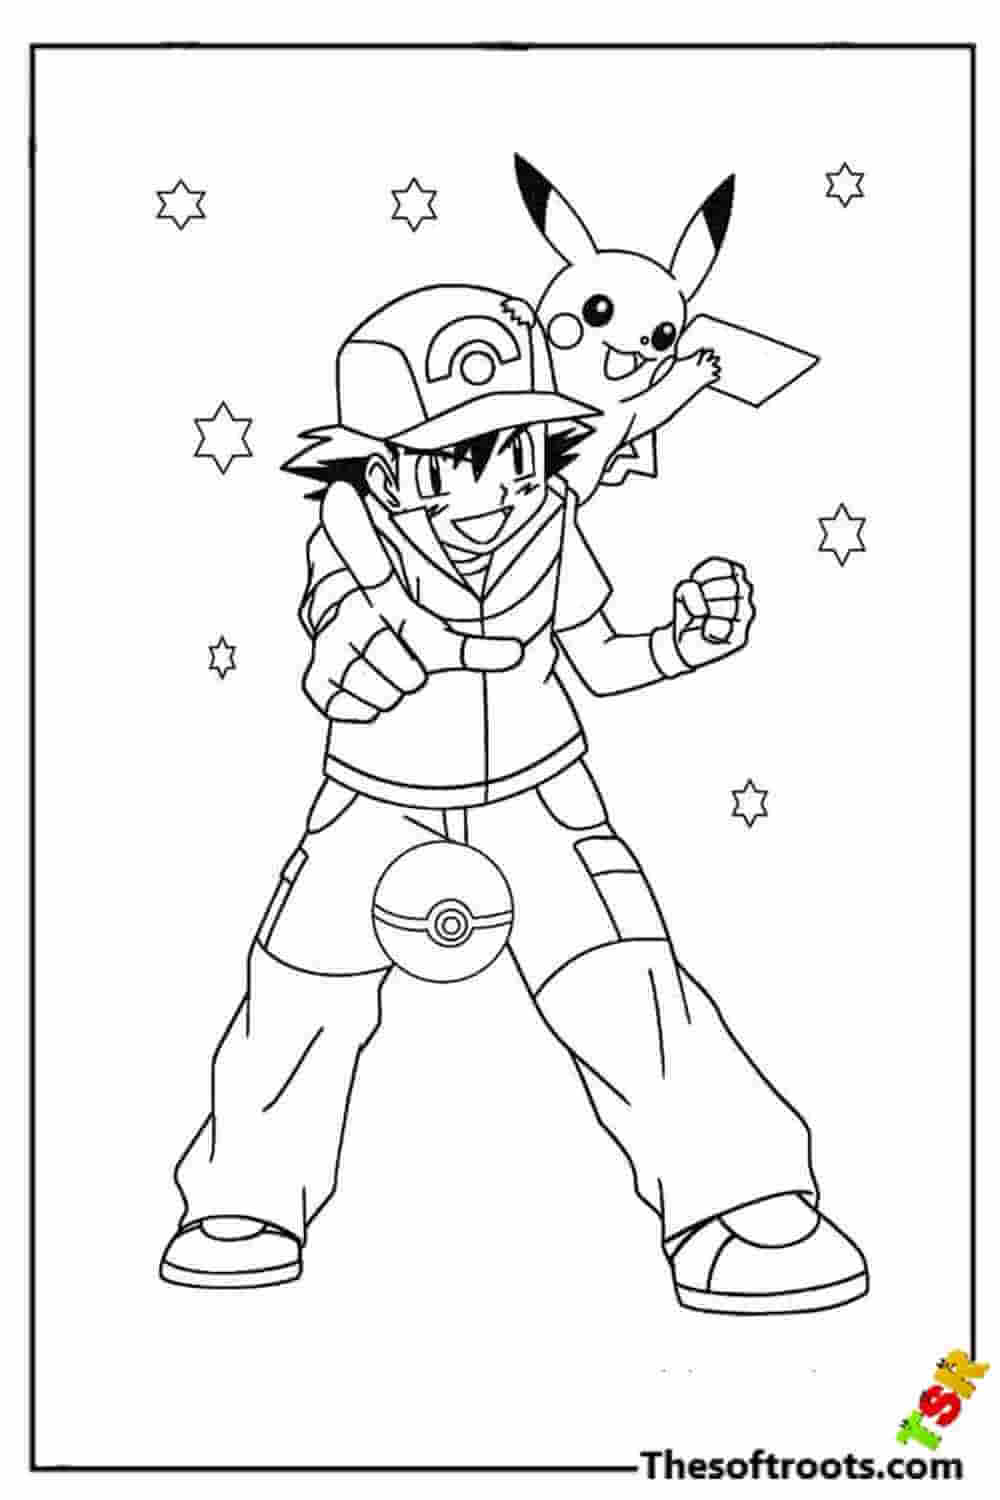 Pokémon ash Pikach coloring pages